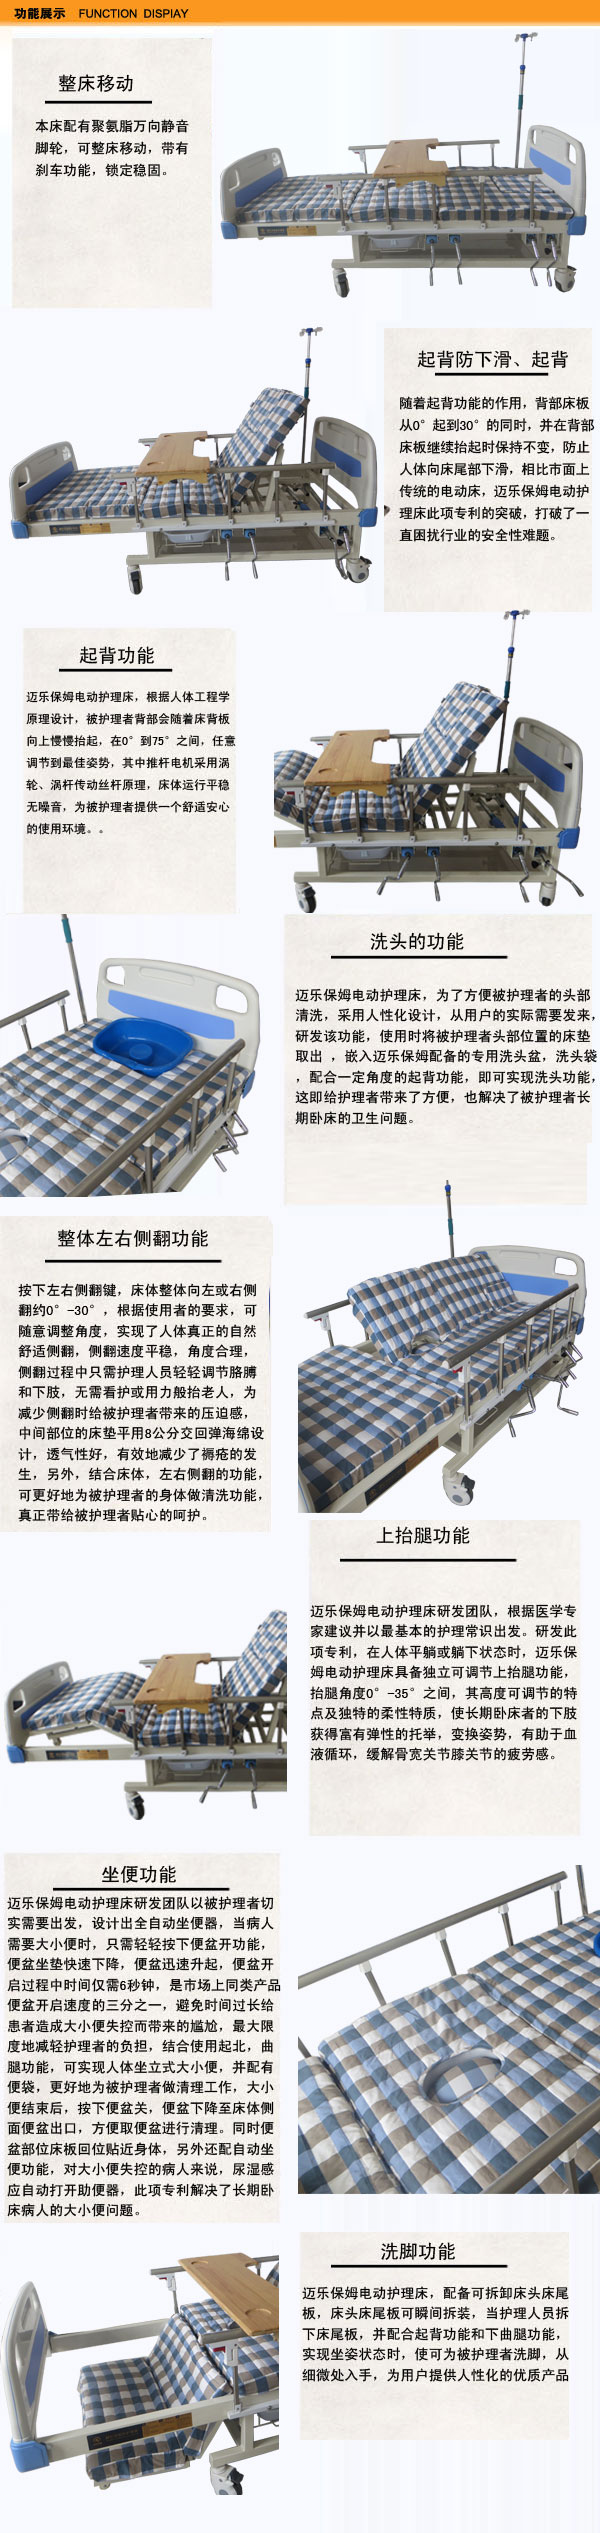 河南信阳家用护理床生产厂家如何处理企业的订单